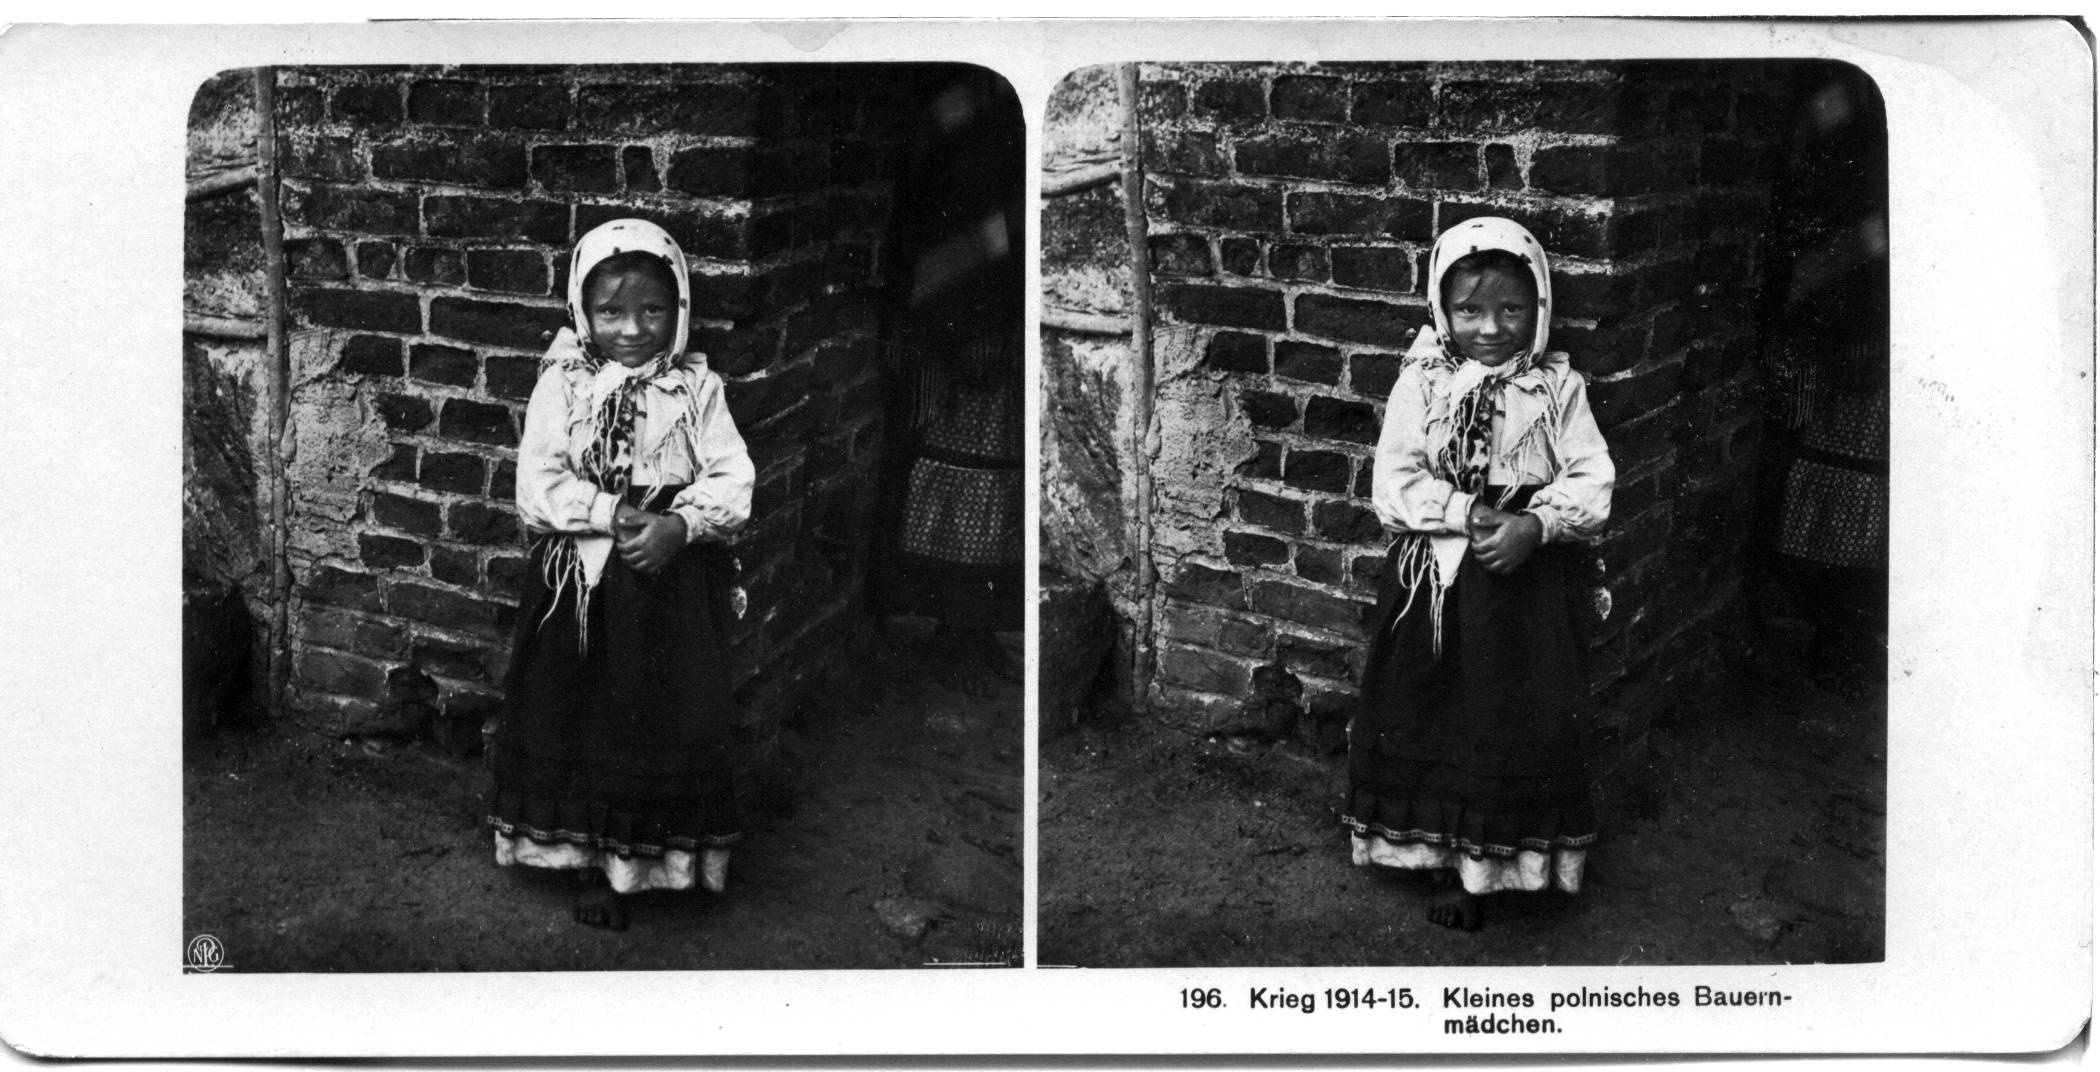 "Kleines polnisches Bauernmädchen" - Little Polish peasant girl